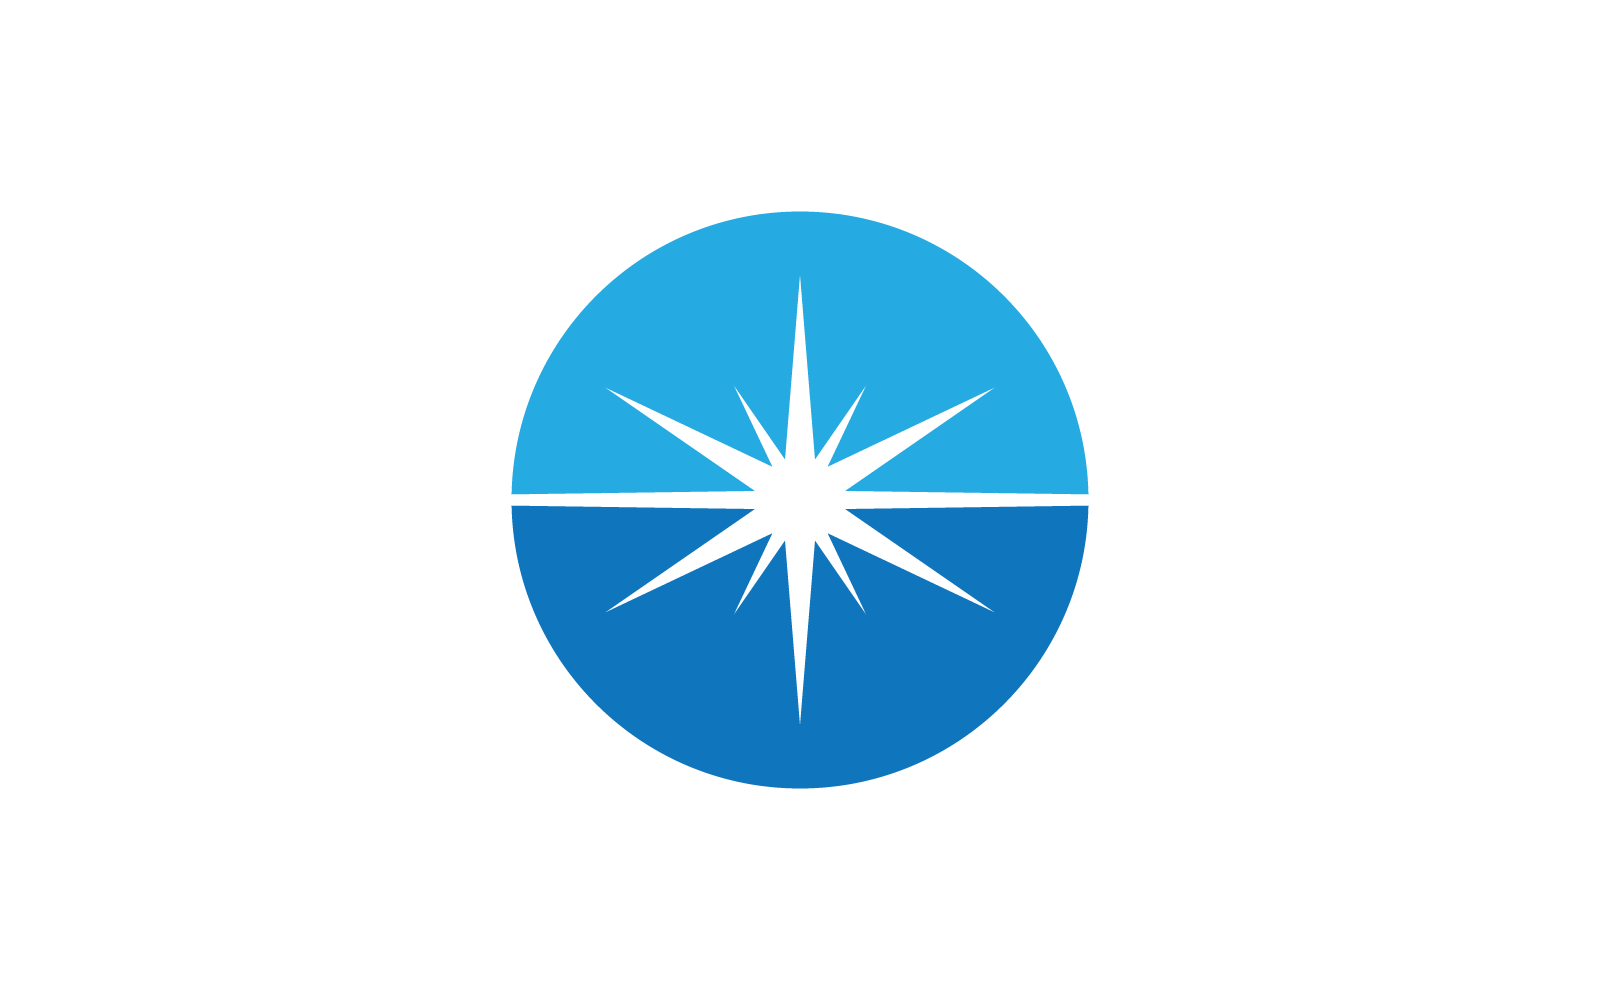 Diseño plano del vector del icono de la ilustración del logotipo de la estrella